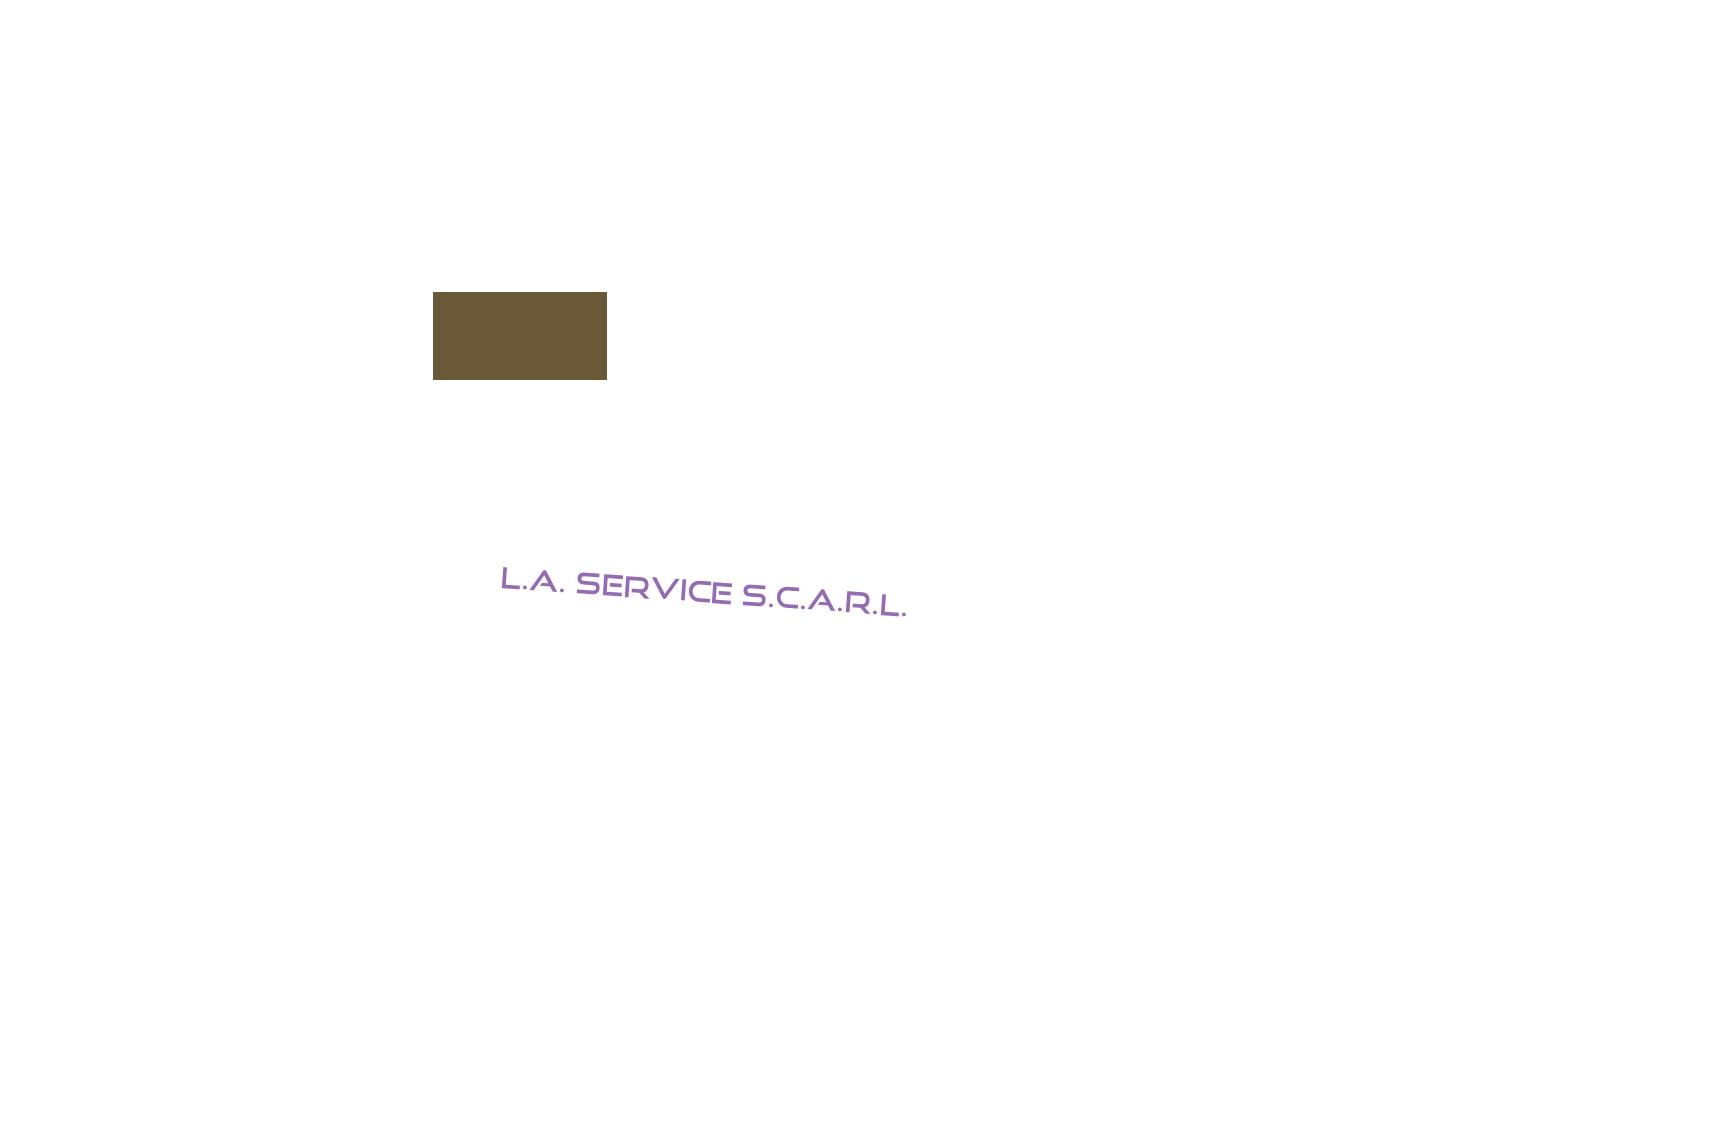 logo L.A. Service S.C.A.R.L.